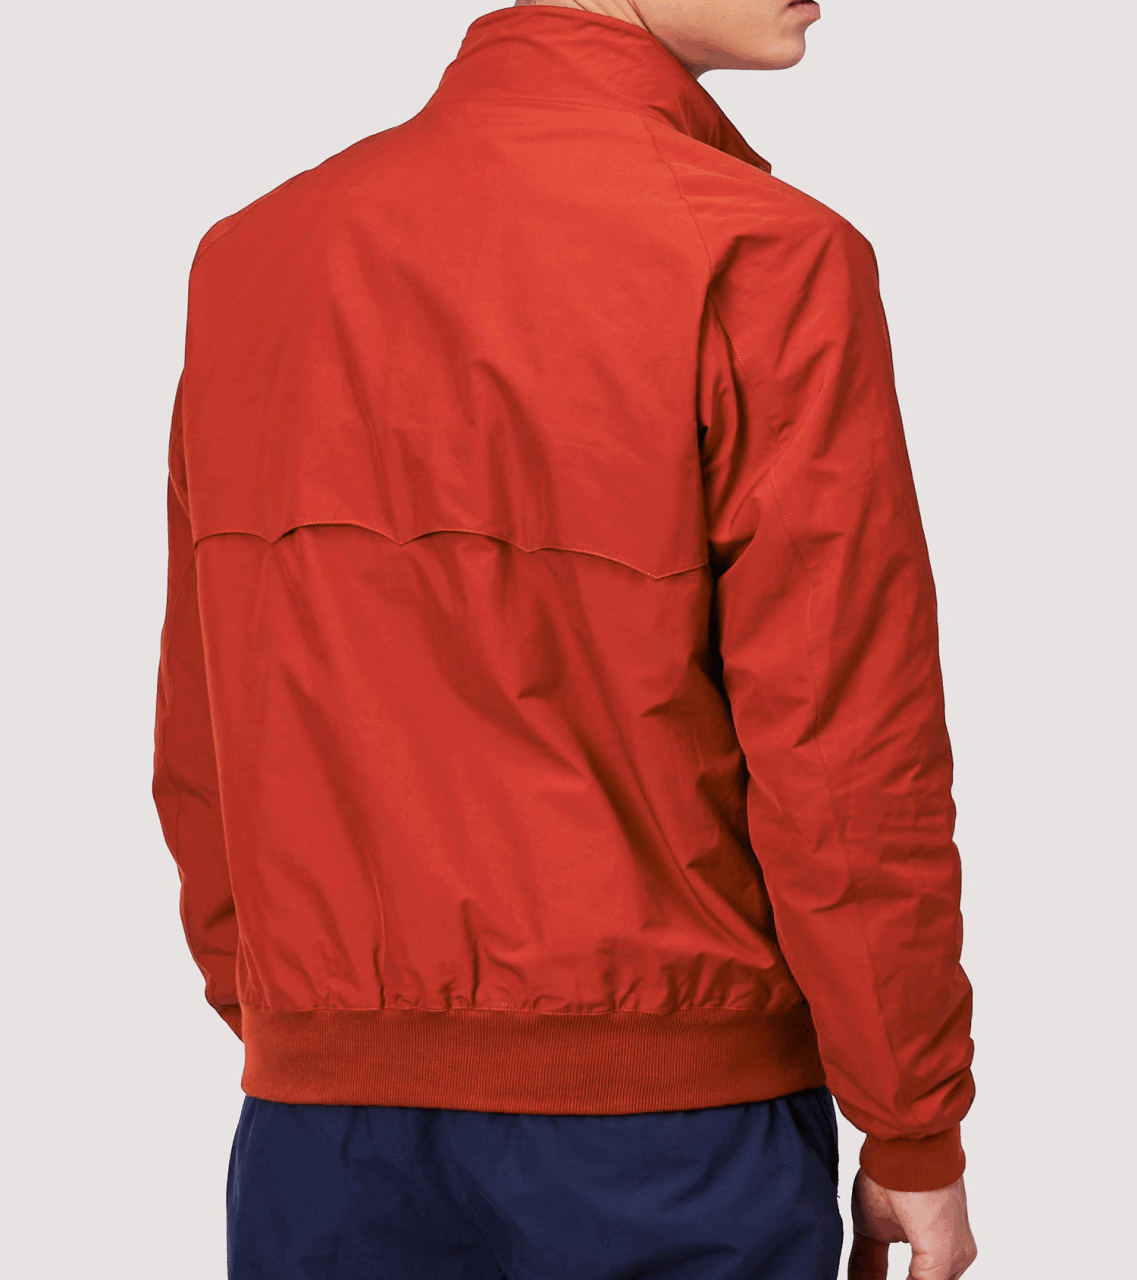 Baracuta G9 Jacket - dark red